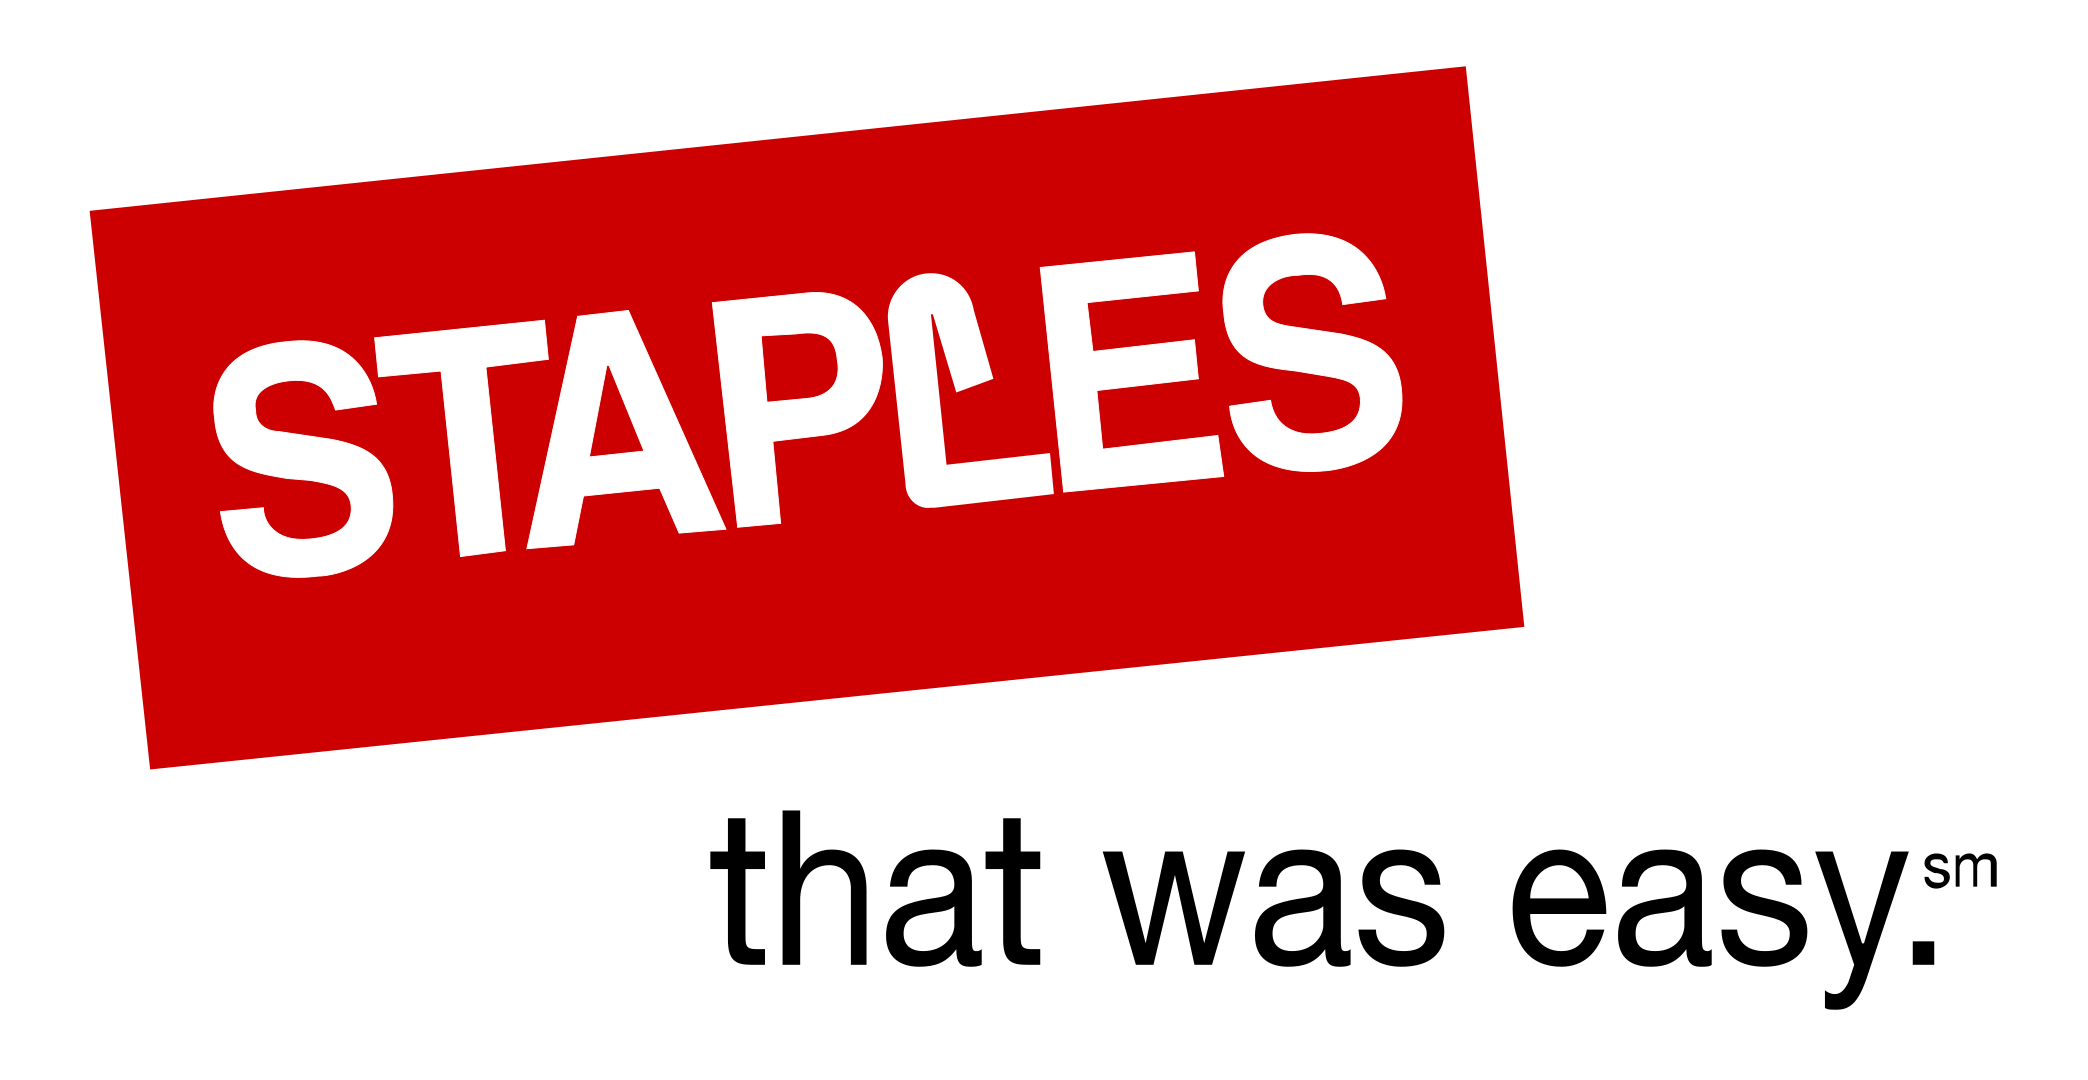 staples center logo png